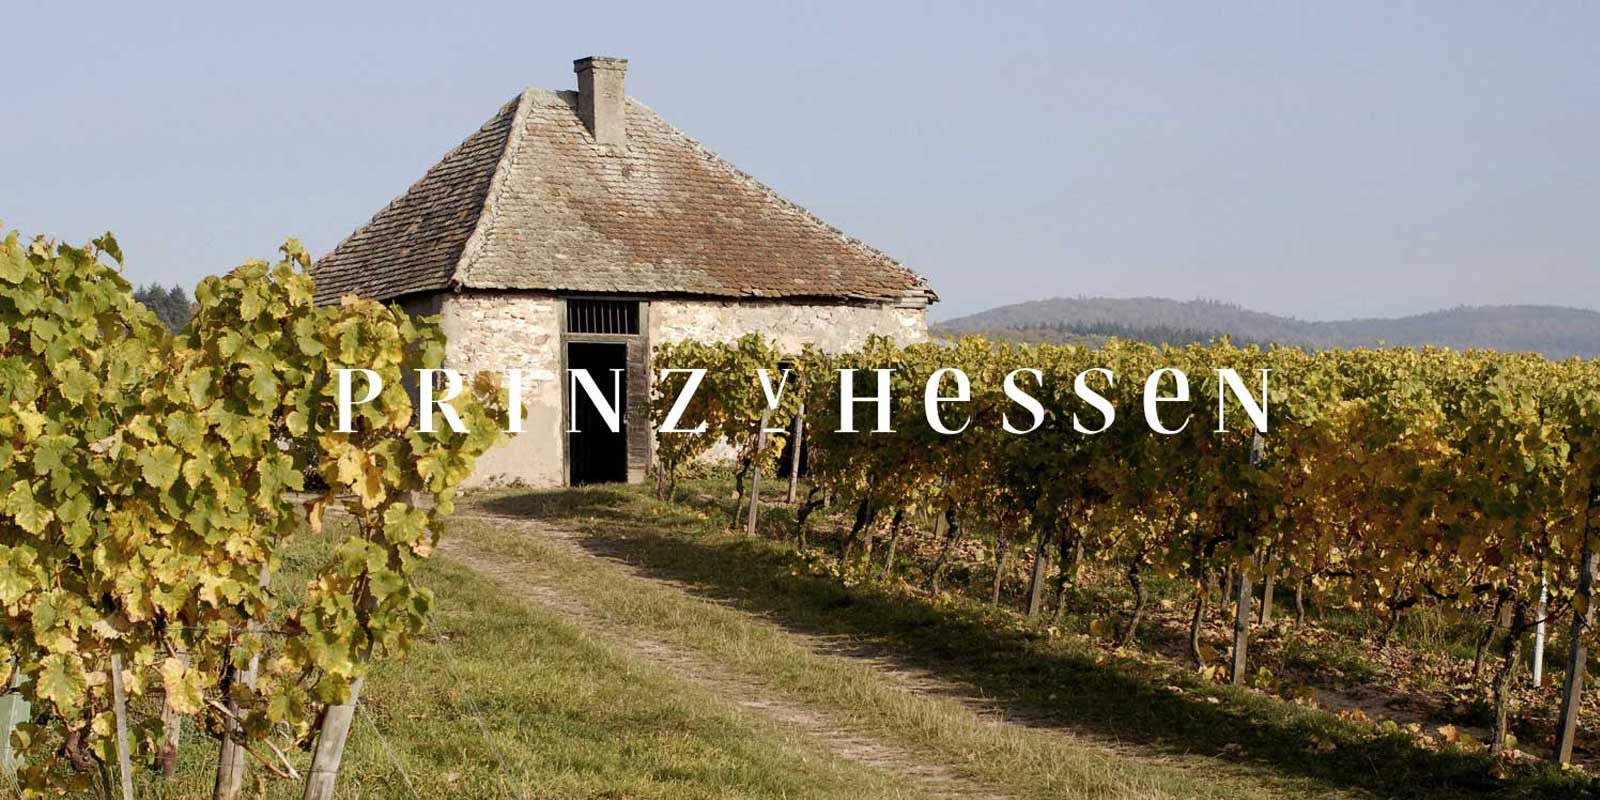 Prince of Hesse vingard - Rheingau vinregion Vingarden PRINZ VON HESSEN i Johannisberg i Rheingau er en af de fremragende Riesling-producenter i Tyskland og er et VDP-stiftende medlem af Rheingau regionale sammenslutning. Talrige anerkendelser i ind- og udland afspejler vingarden PRINZ VON HESSEN, som er pa topniveau. Vine og mousserende vine fra vingarden PRINZ VON HESSEN har vundet mange priser og modtaget hoeje internationale priser.